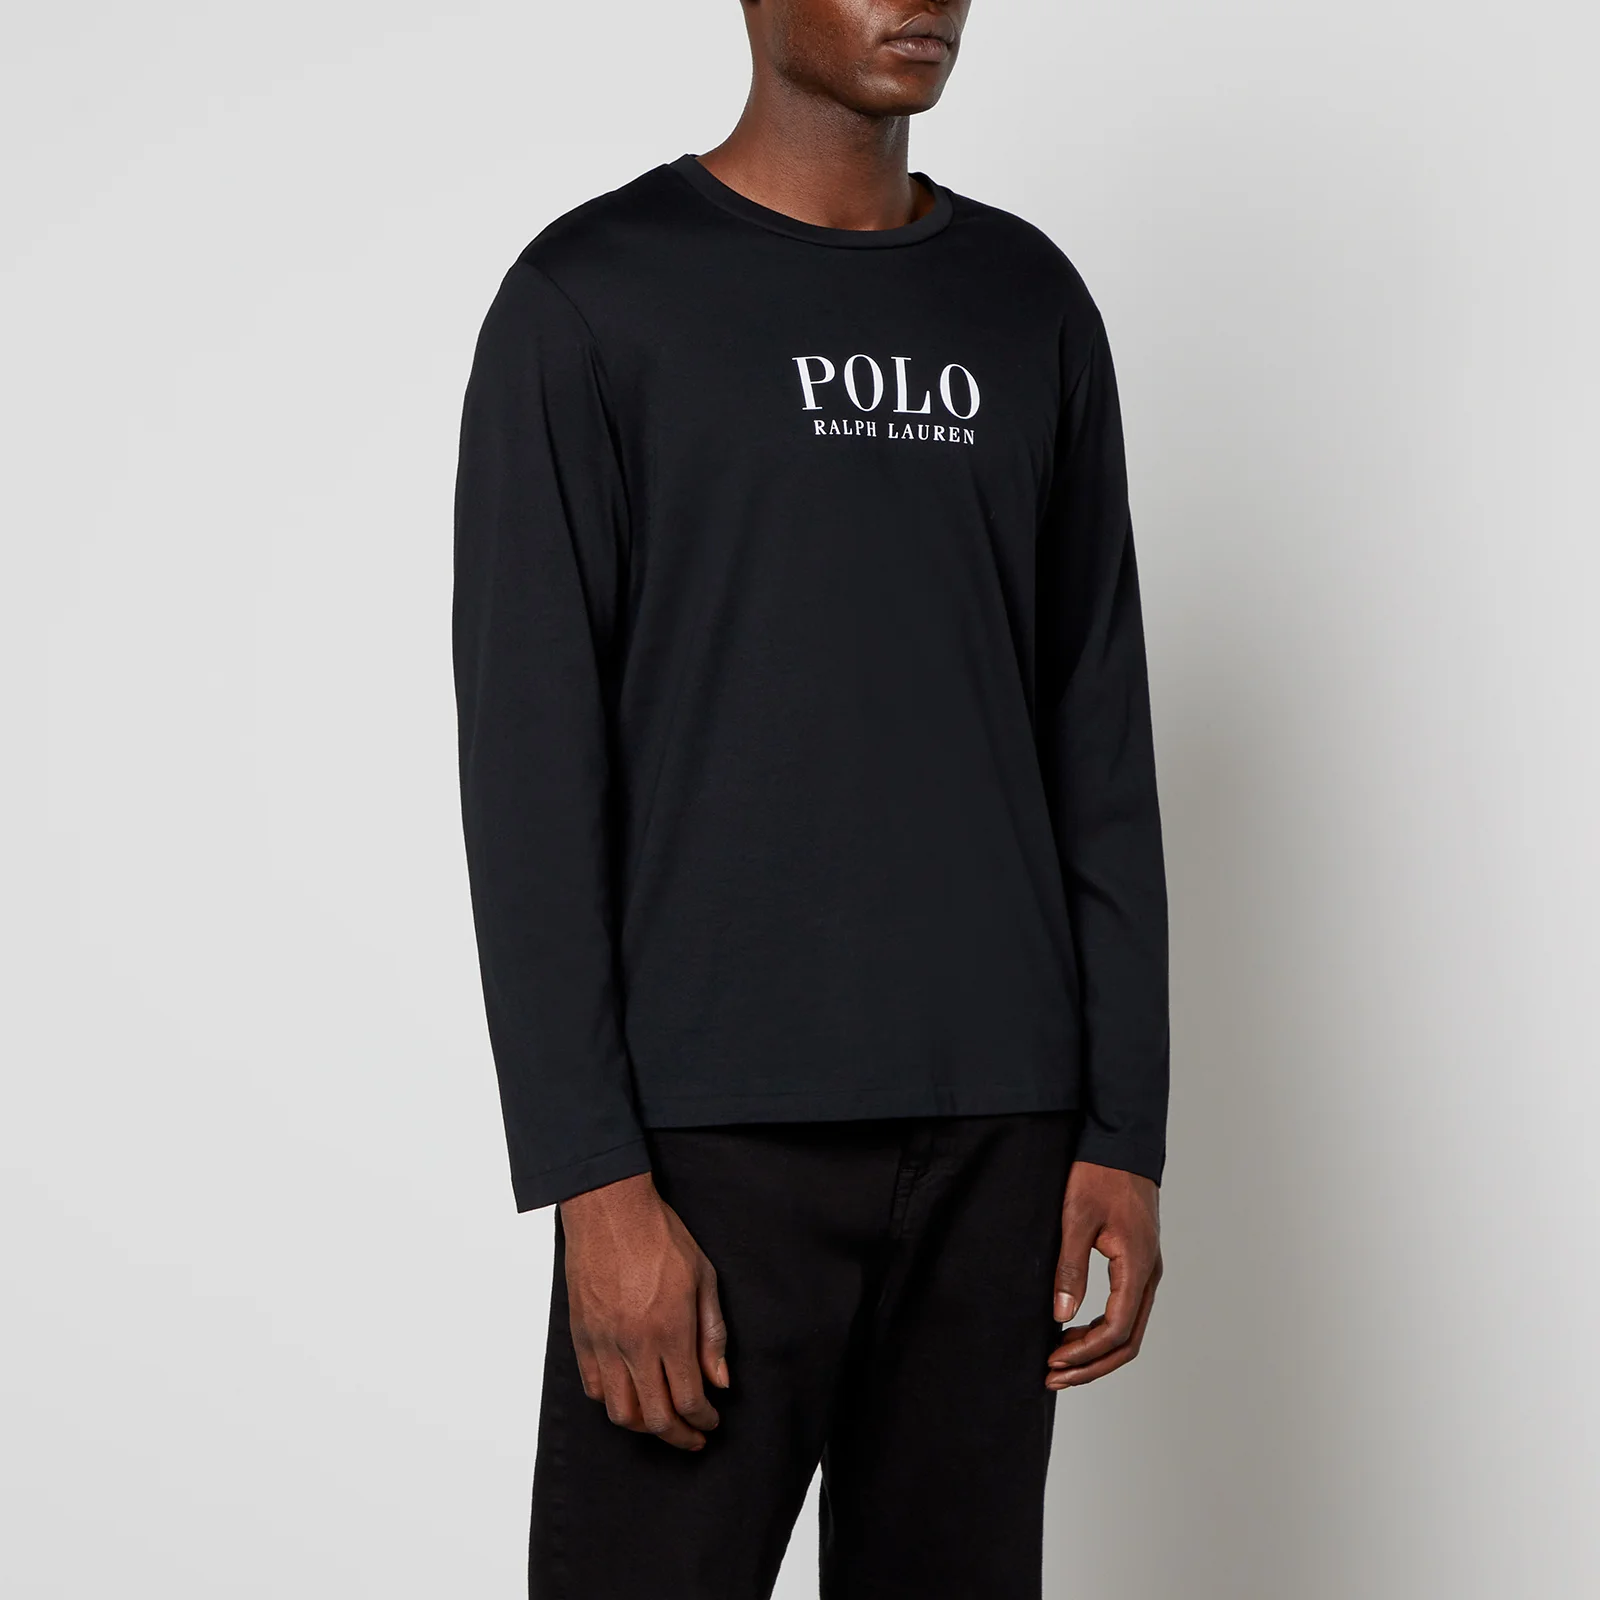 Polo Ralph Lauren Men's Boxed Logo Long Sleeve Top - Polo Black Image 1